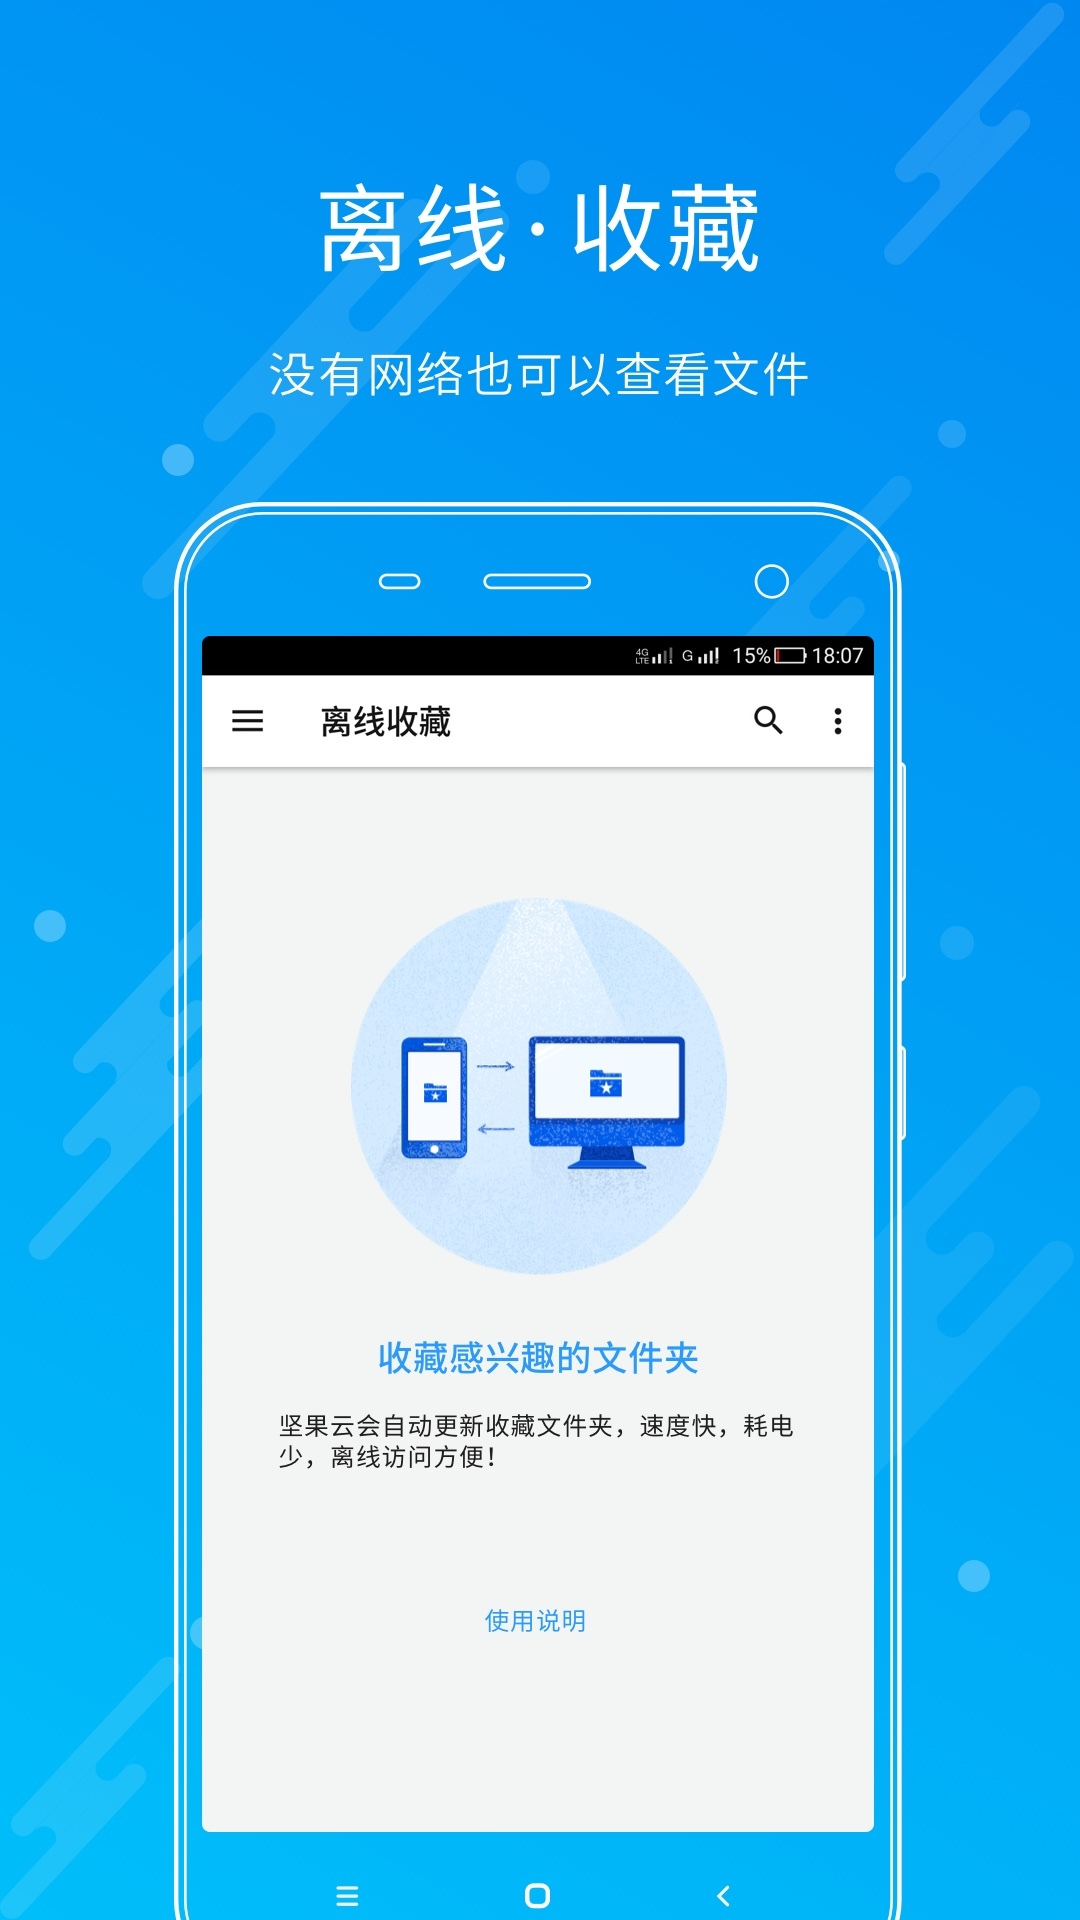 移动手机阅读客户端中国移动网上营业厅官网